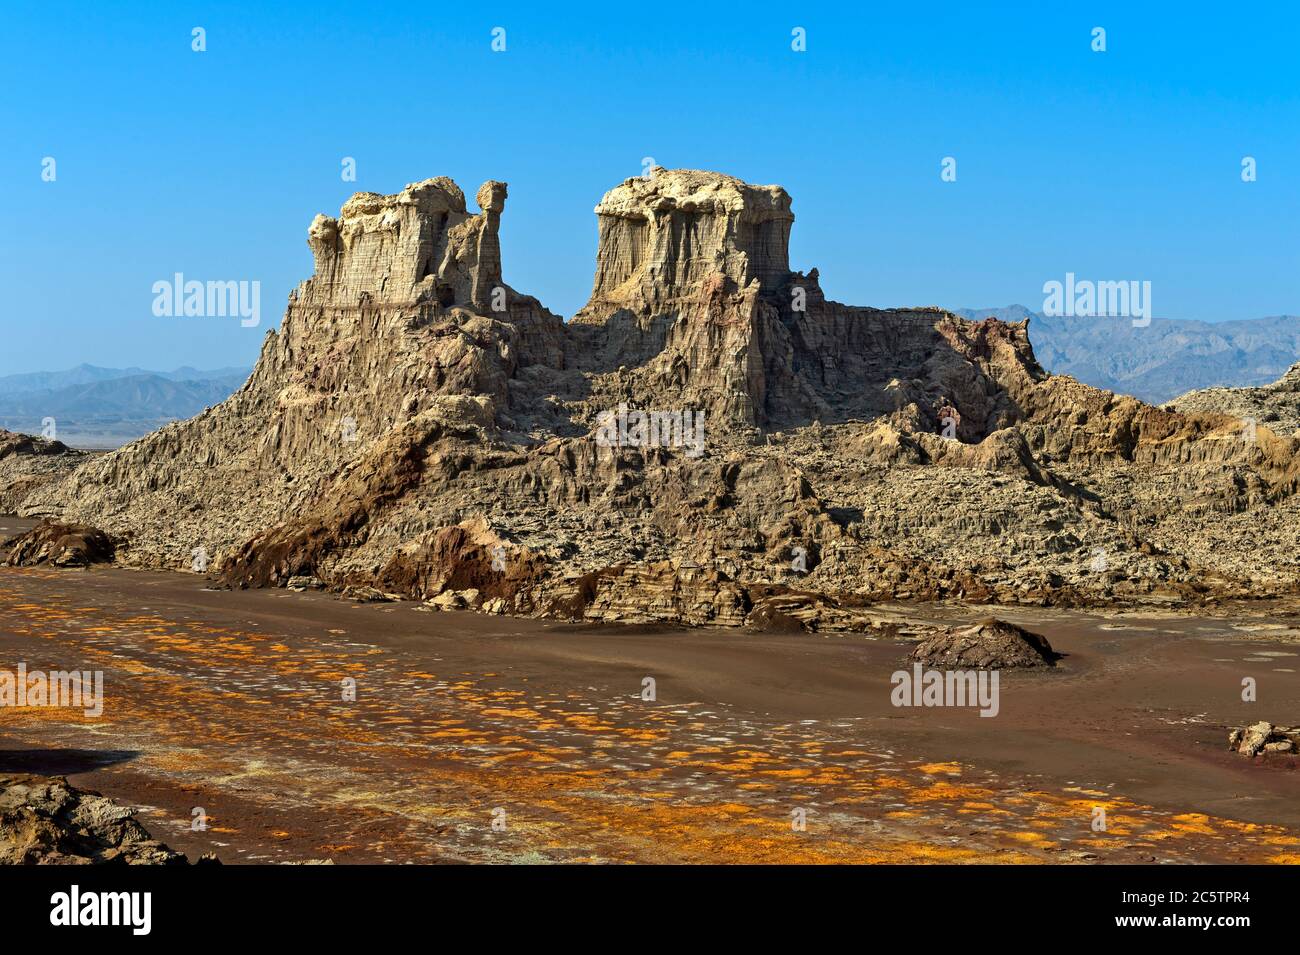 Château du désert composé principalement de sels de potassium et de magnésium, canyon de sel du volcan Dallol, Hamadela, dépression de Danakil, Ethiopie Banque D'Images